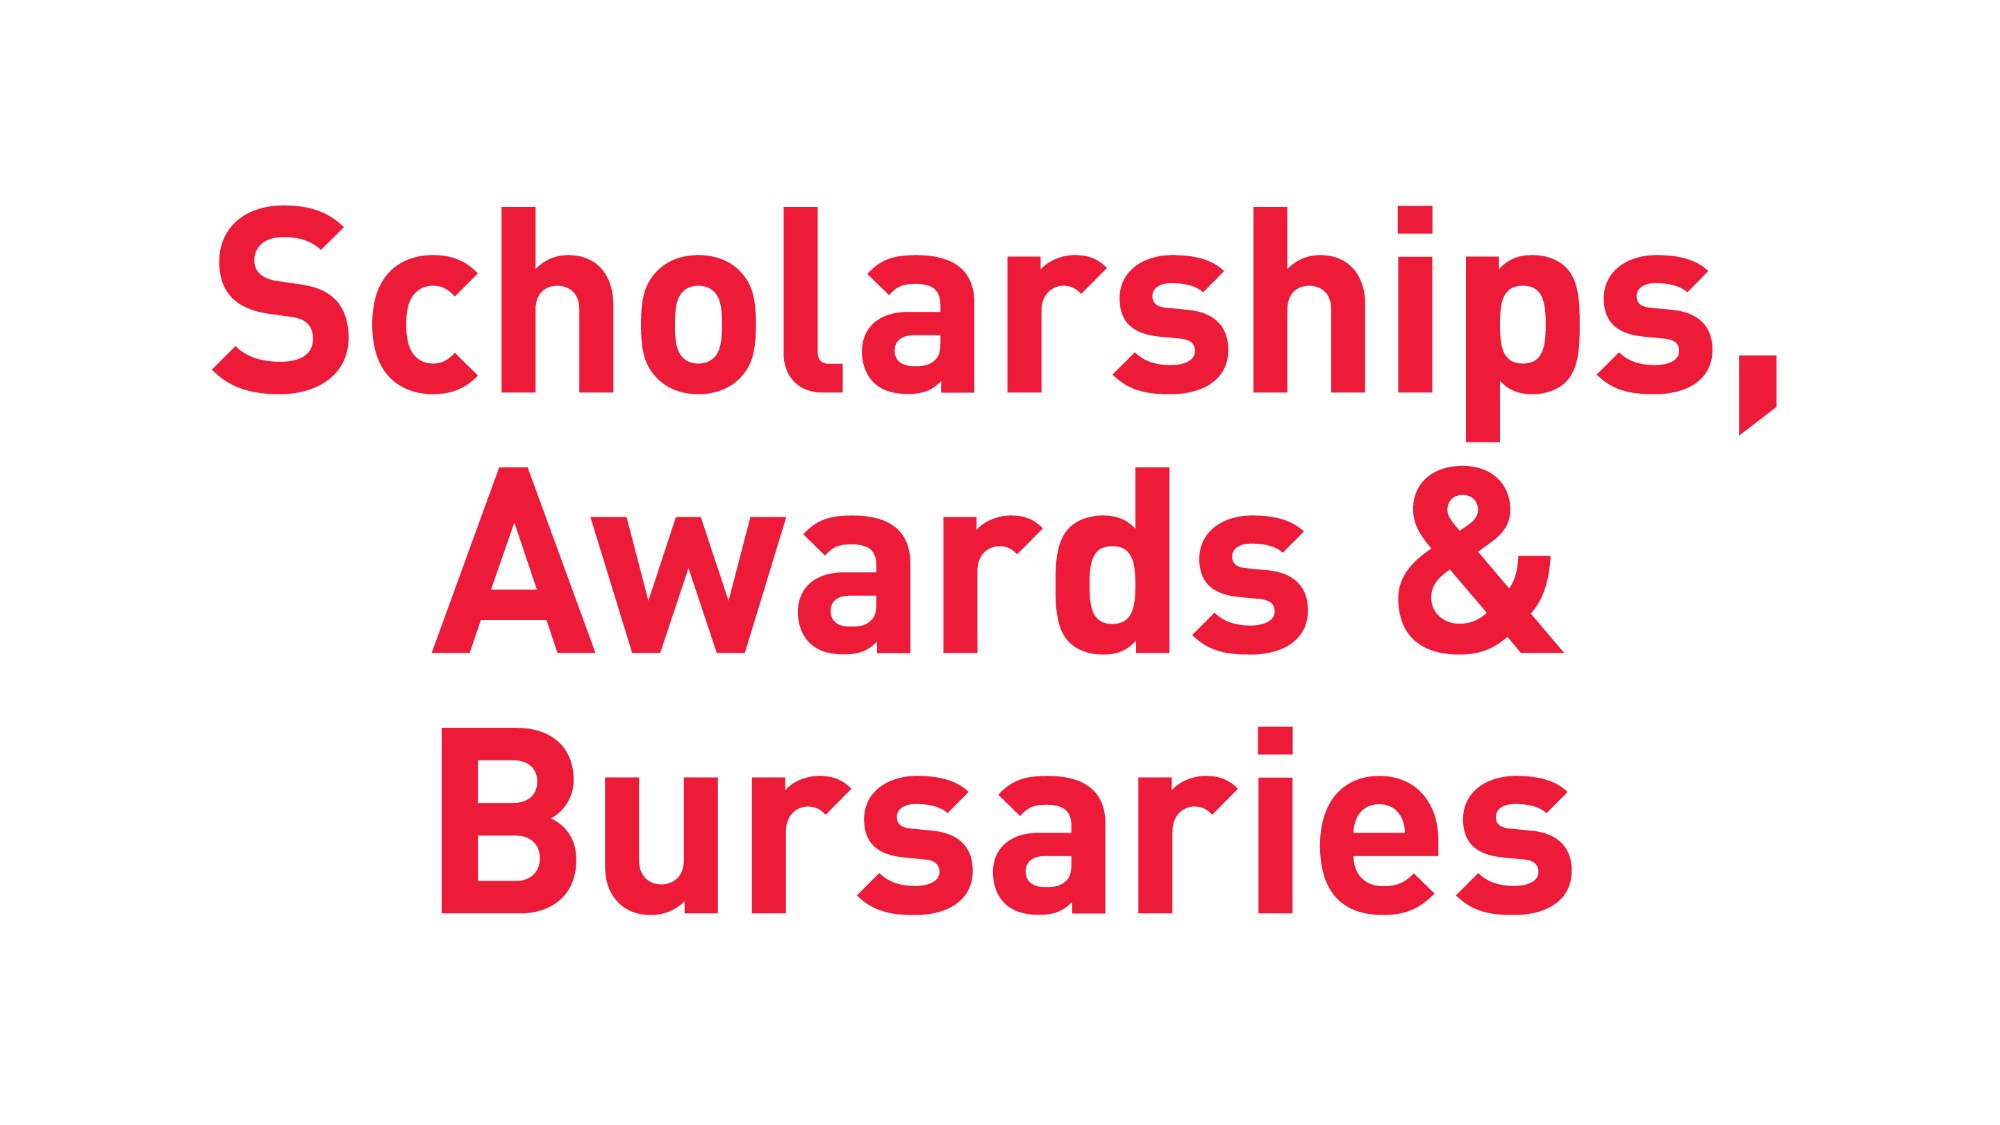 Scholarships, Awards & Bursaries